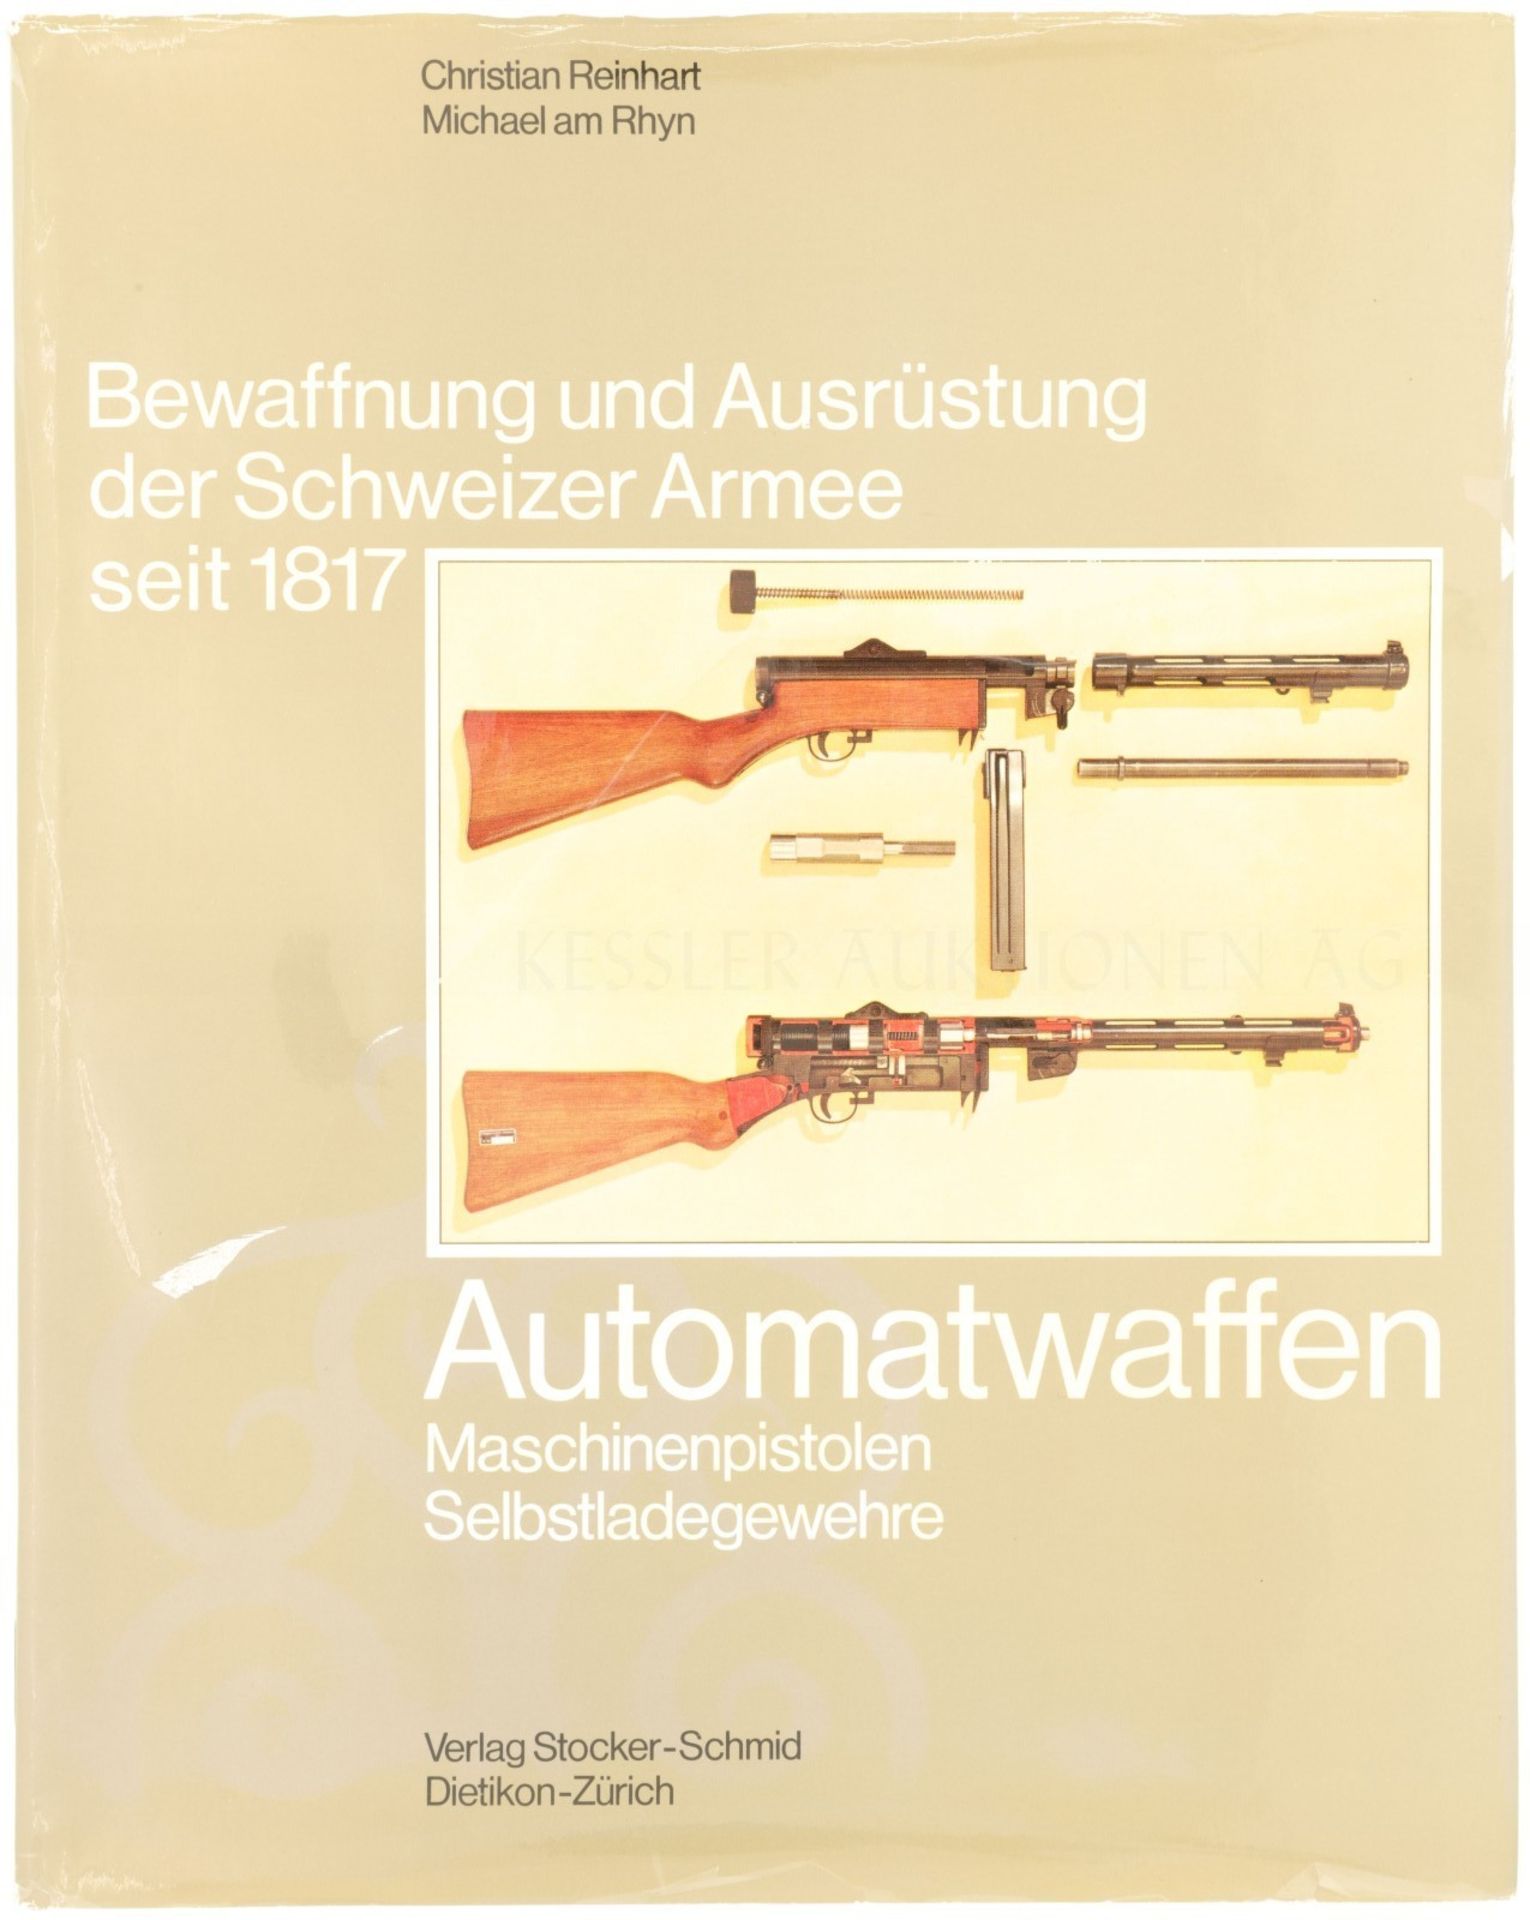 Automatwaffen, Maschinenpistolen, Selbstladegewehre, Band 13 der Reihe "Bewaffnung und Ausrüstung de